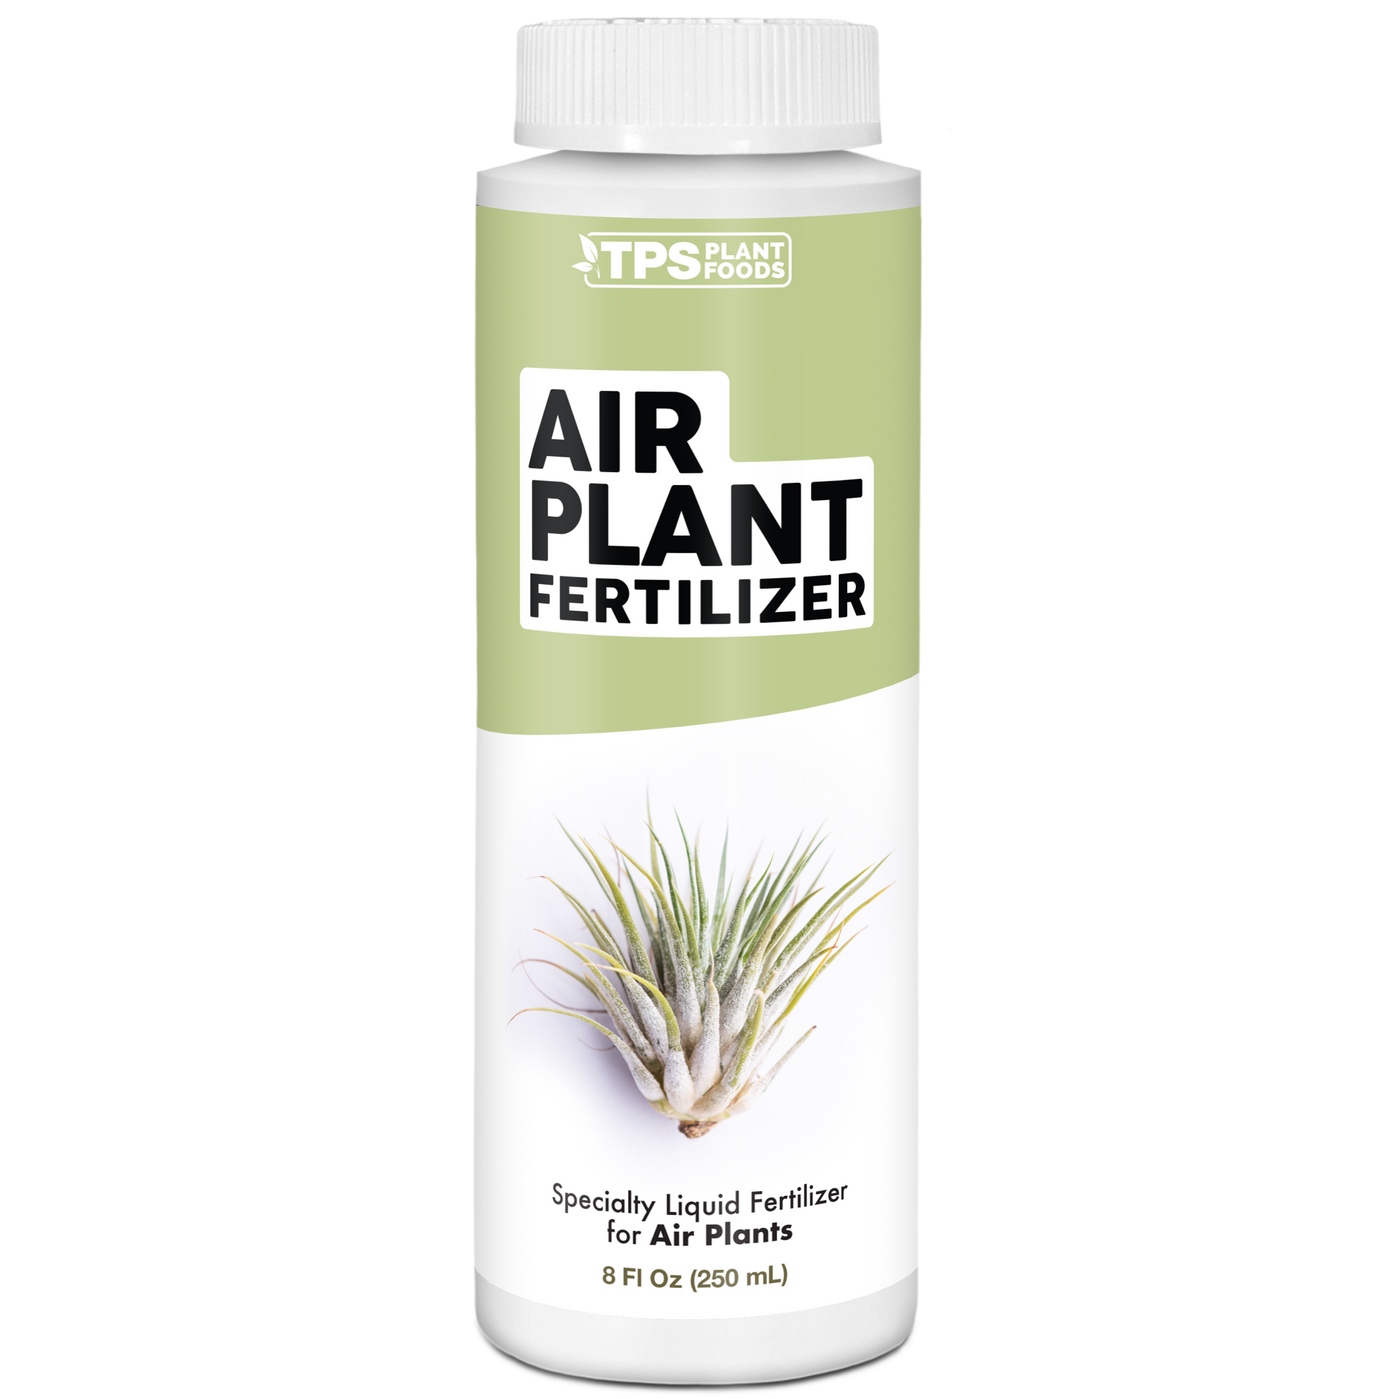 Air Plant Fertilizer